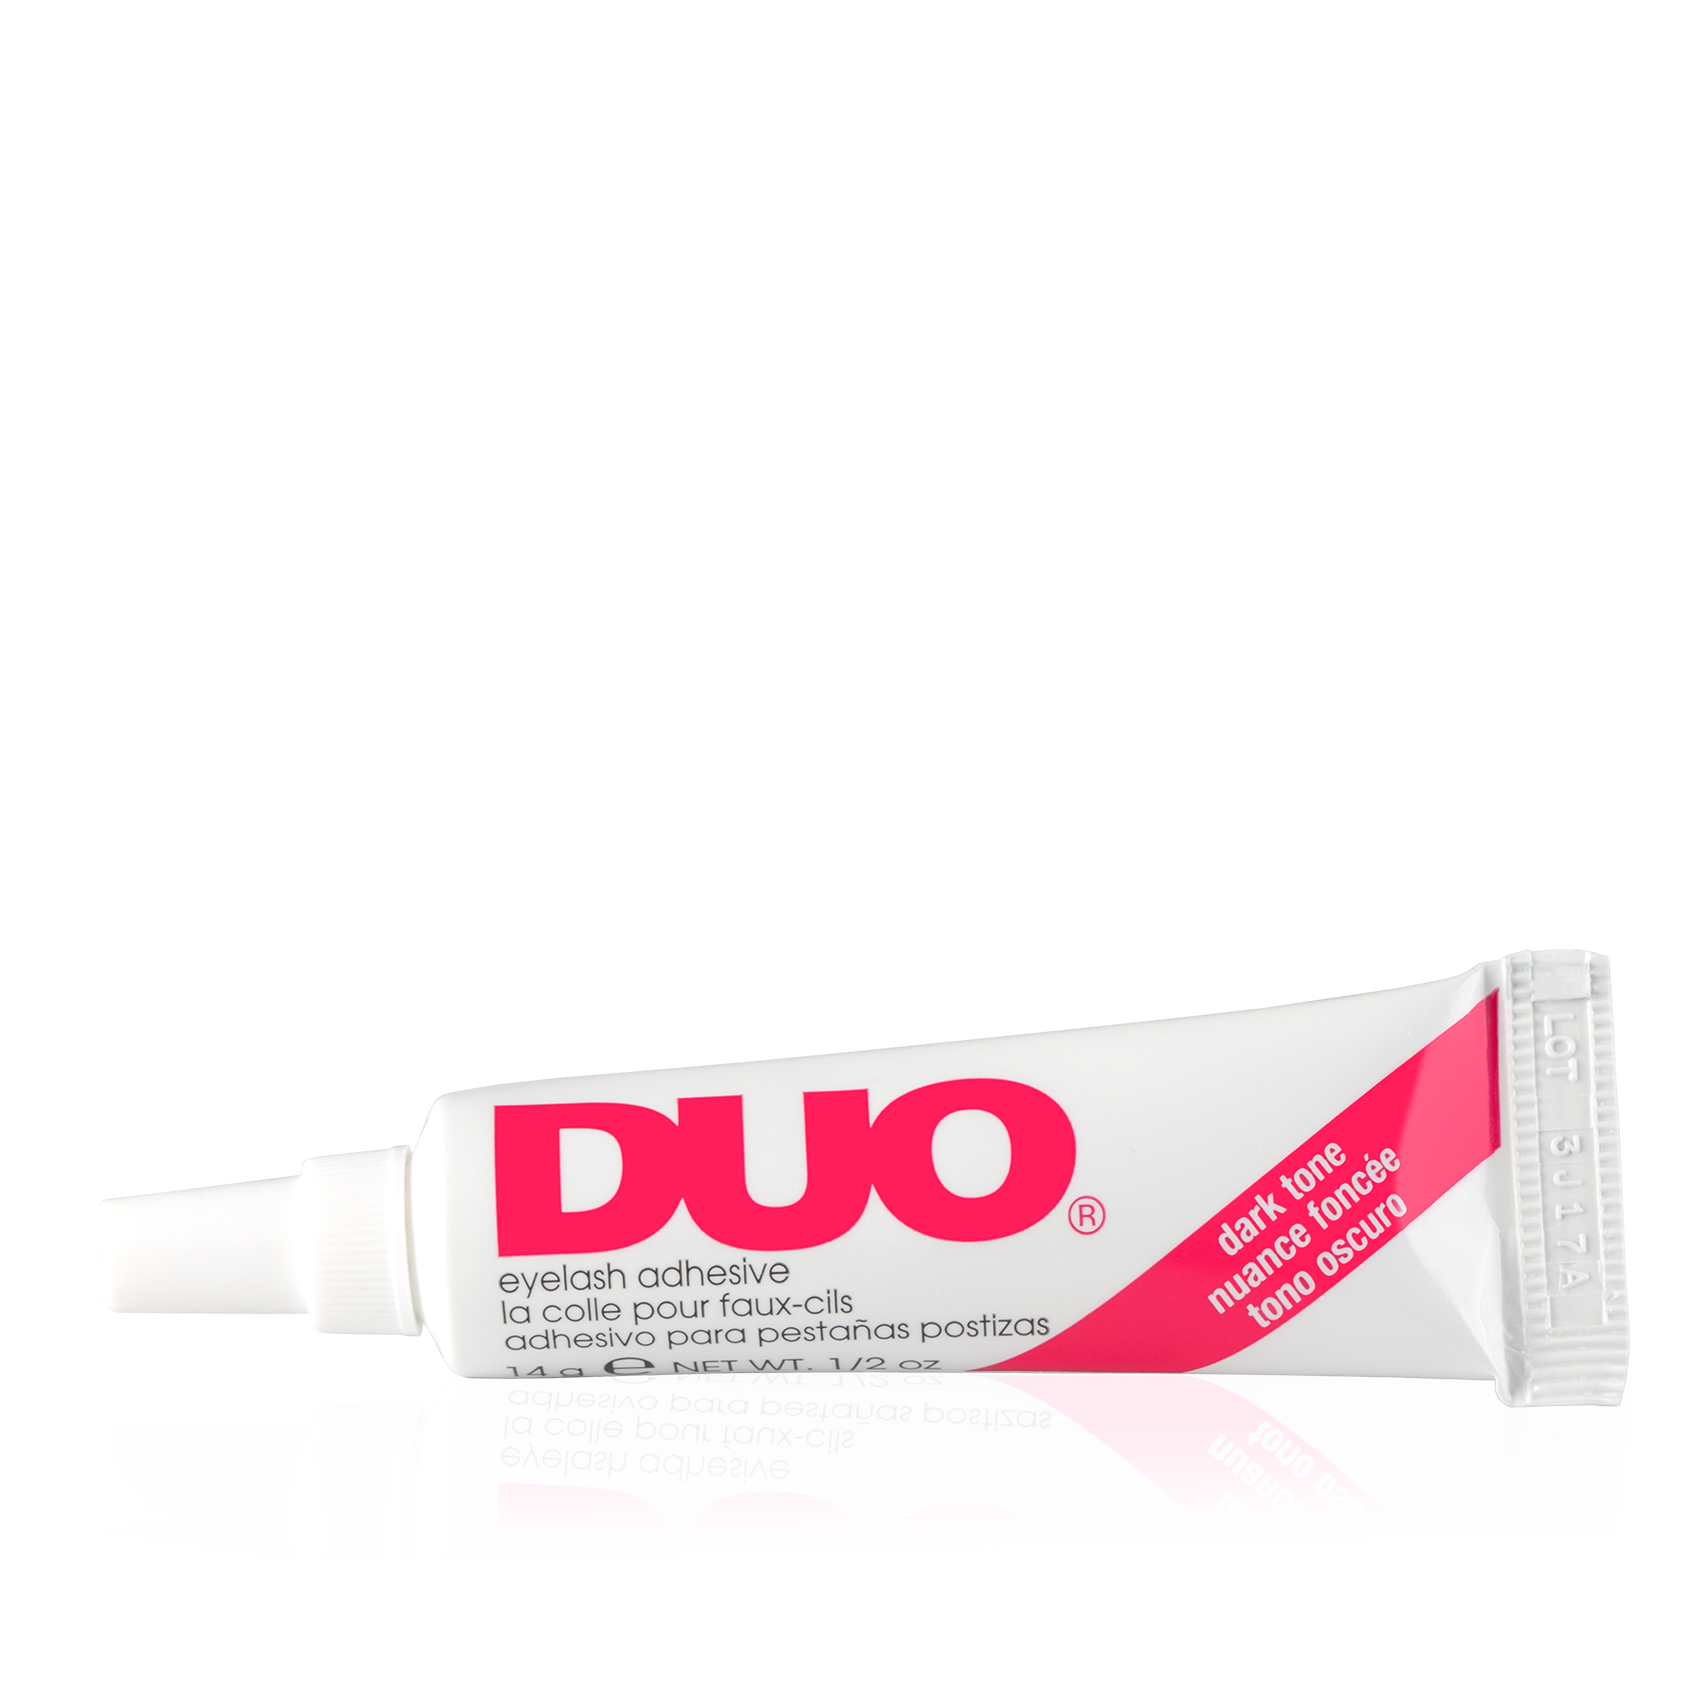 клей для ресниц DUO (водостойкий) / Клей для ресниц DUO водо